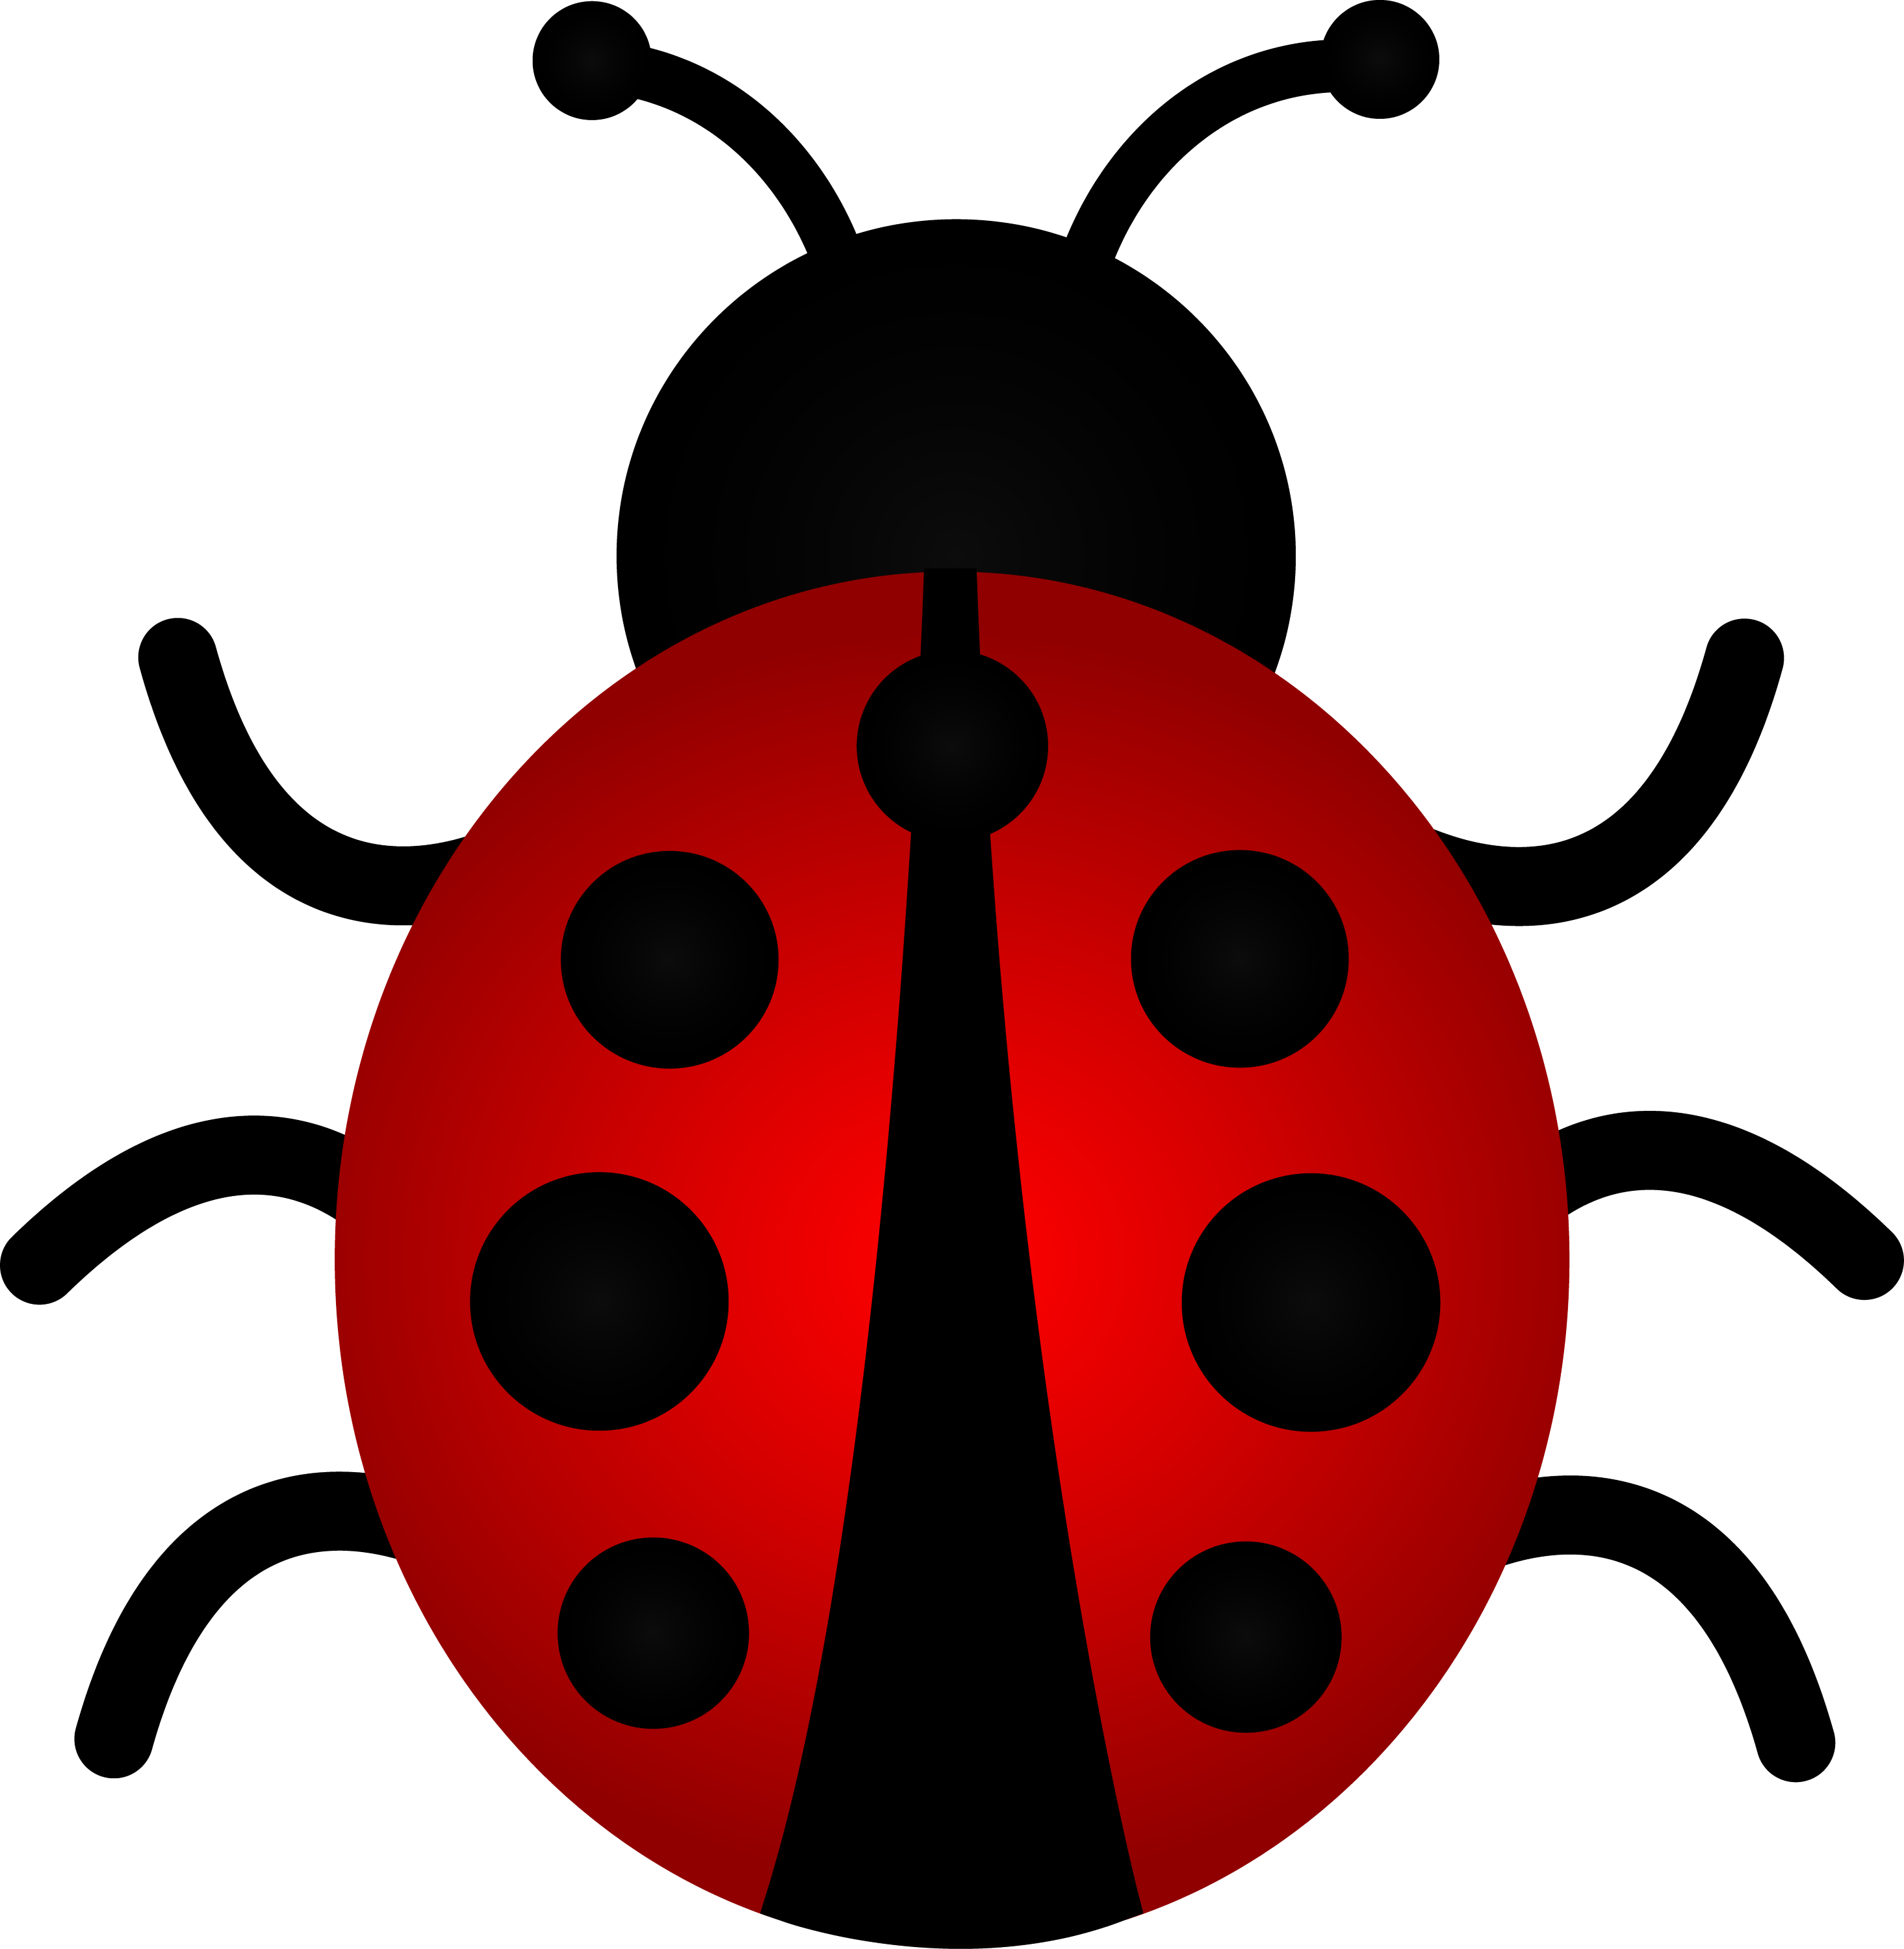 ladybug images clip art - photo #5